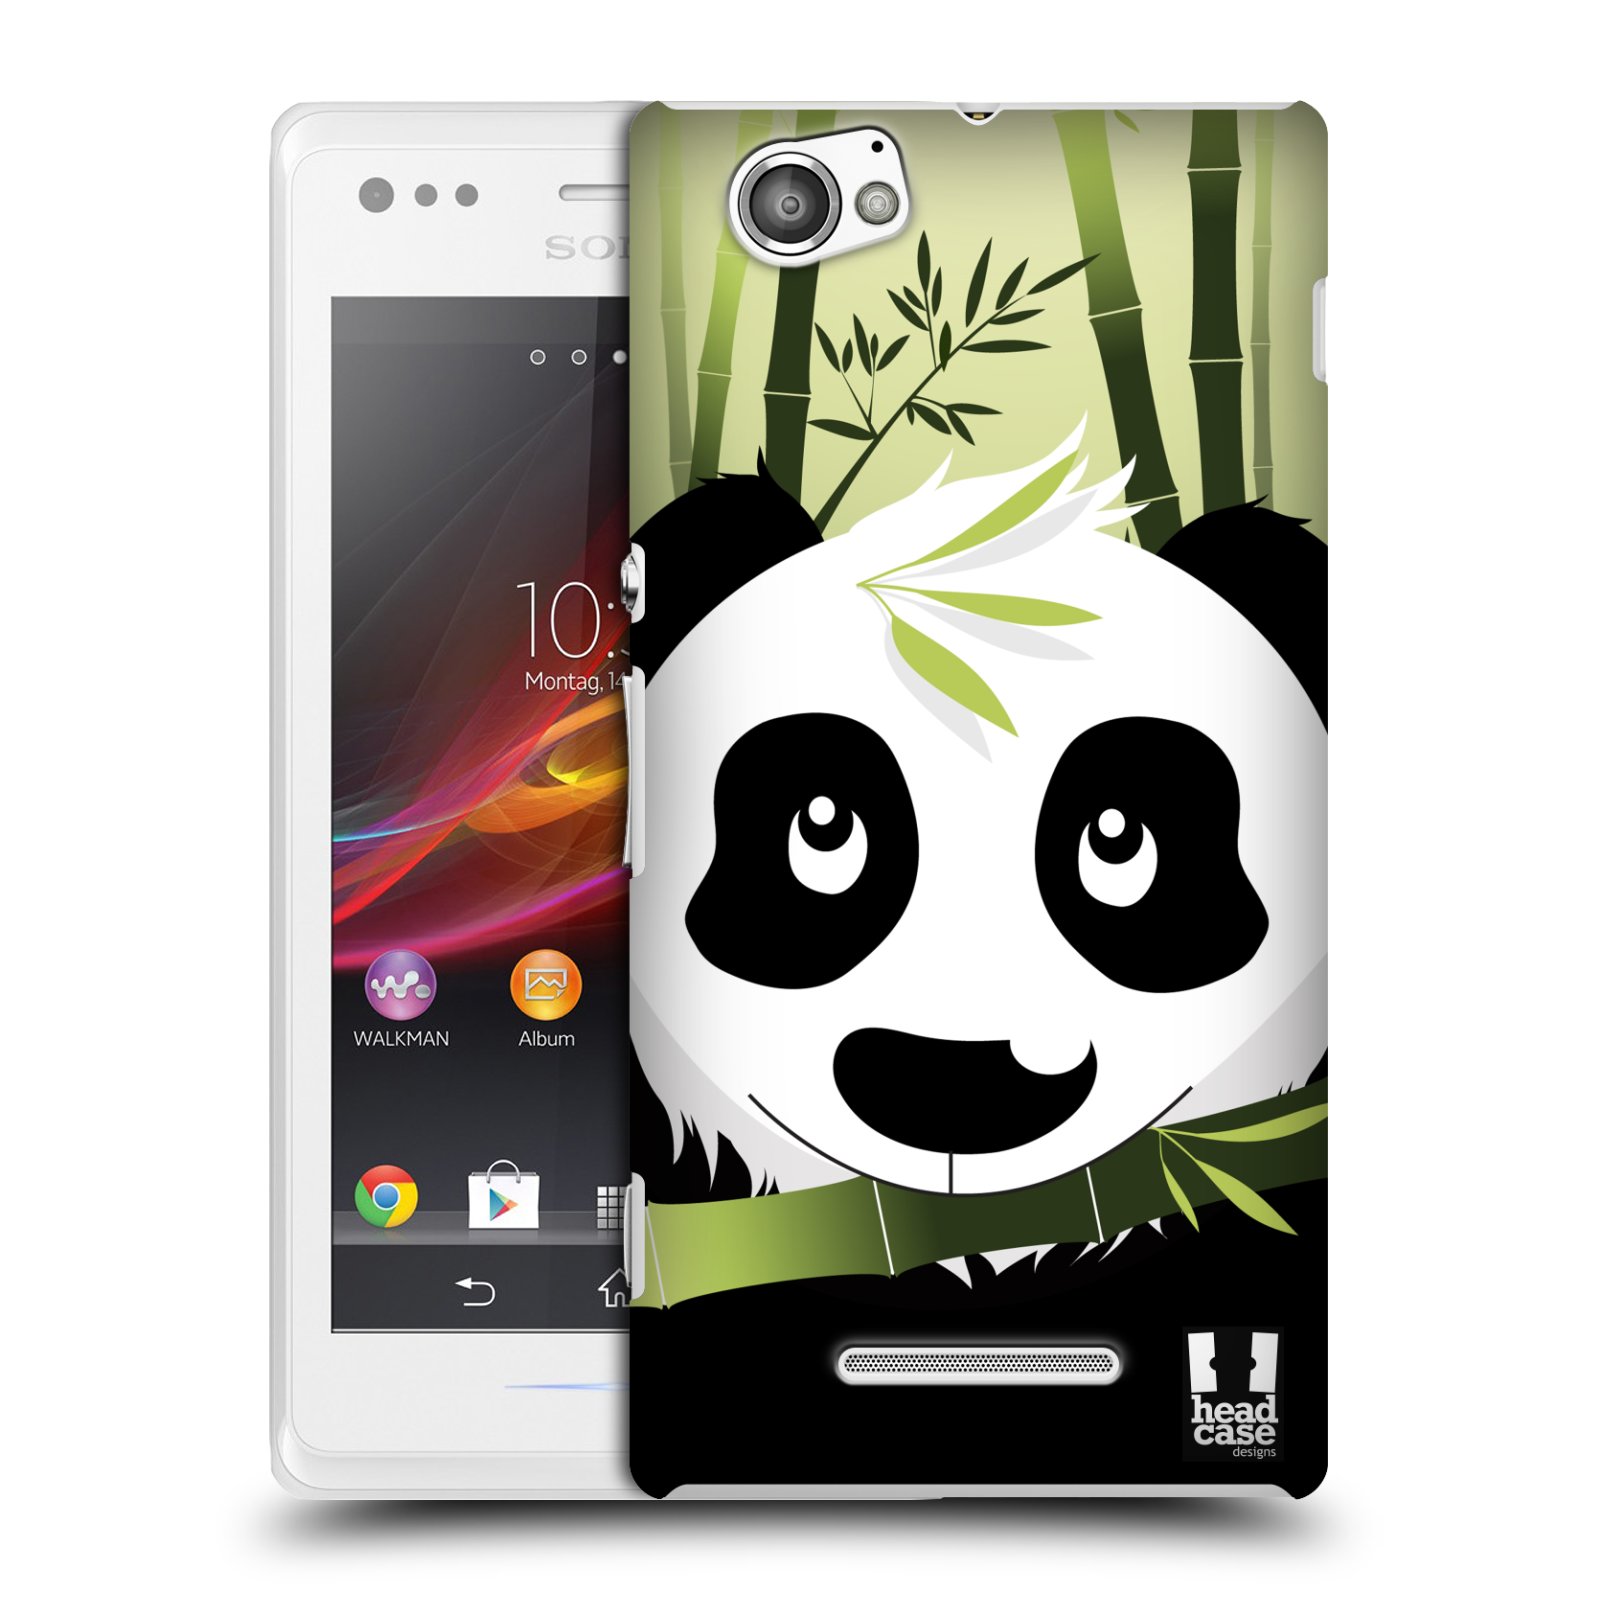 HEAD CASE plastový obal na mobil Sony Xperia M vzor kreslená panda zelená